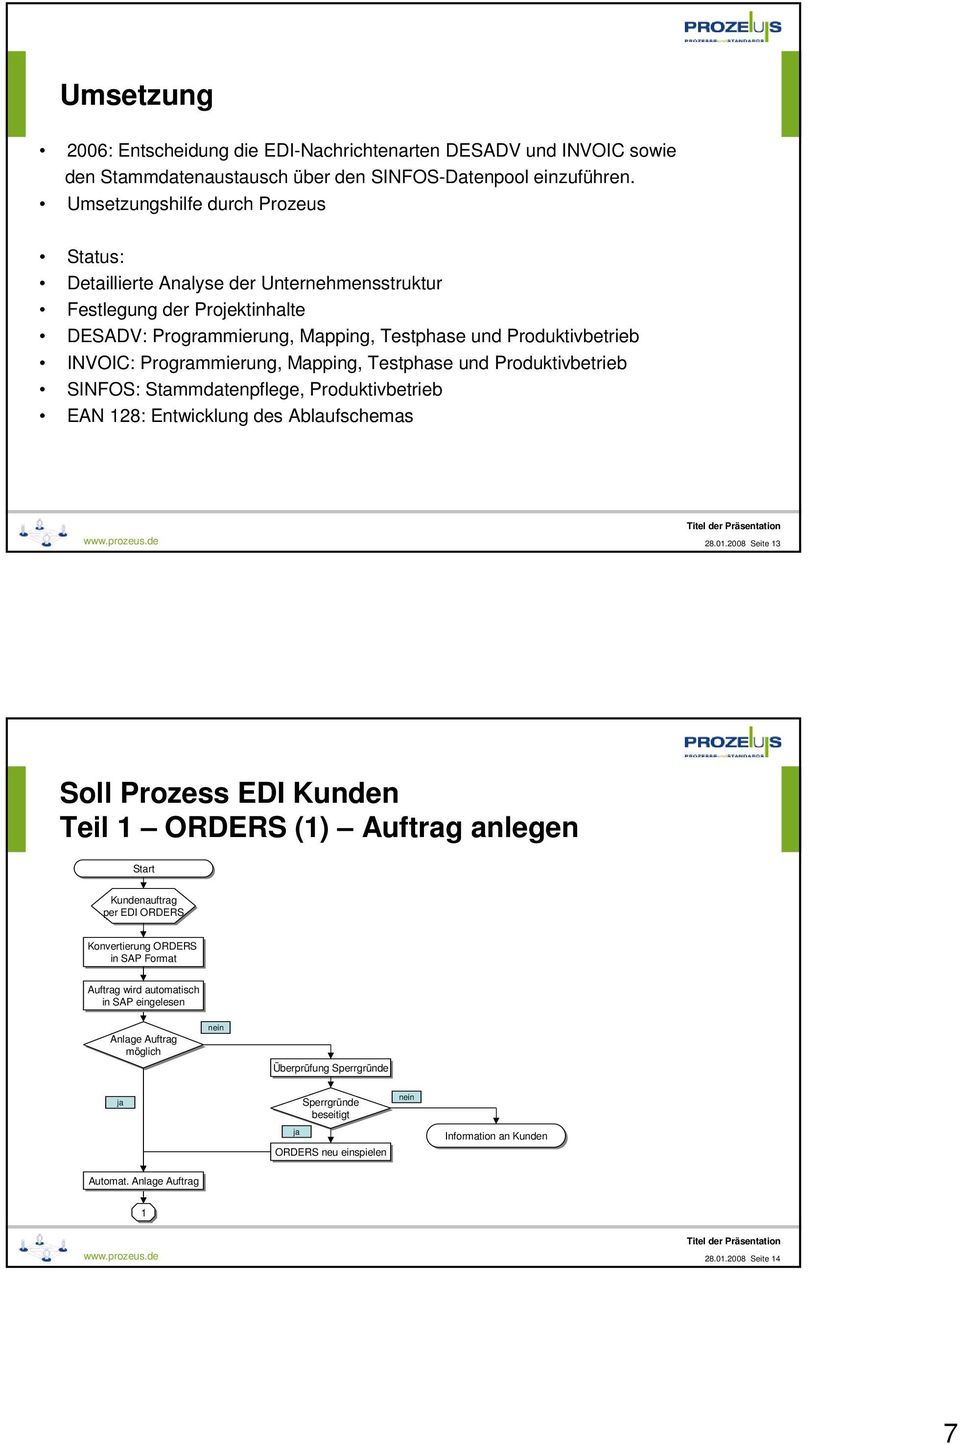 Mapping, Testphase und Produktivbetrieb SINFOS: Stammdatenpflege, Produktivbetrieb EN 128: Entwicklung des blaufschemas www.prozeus.de 28.01.